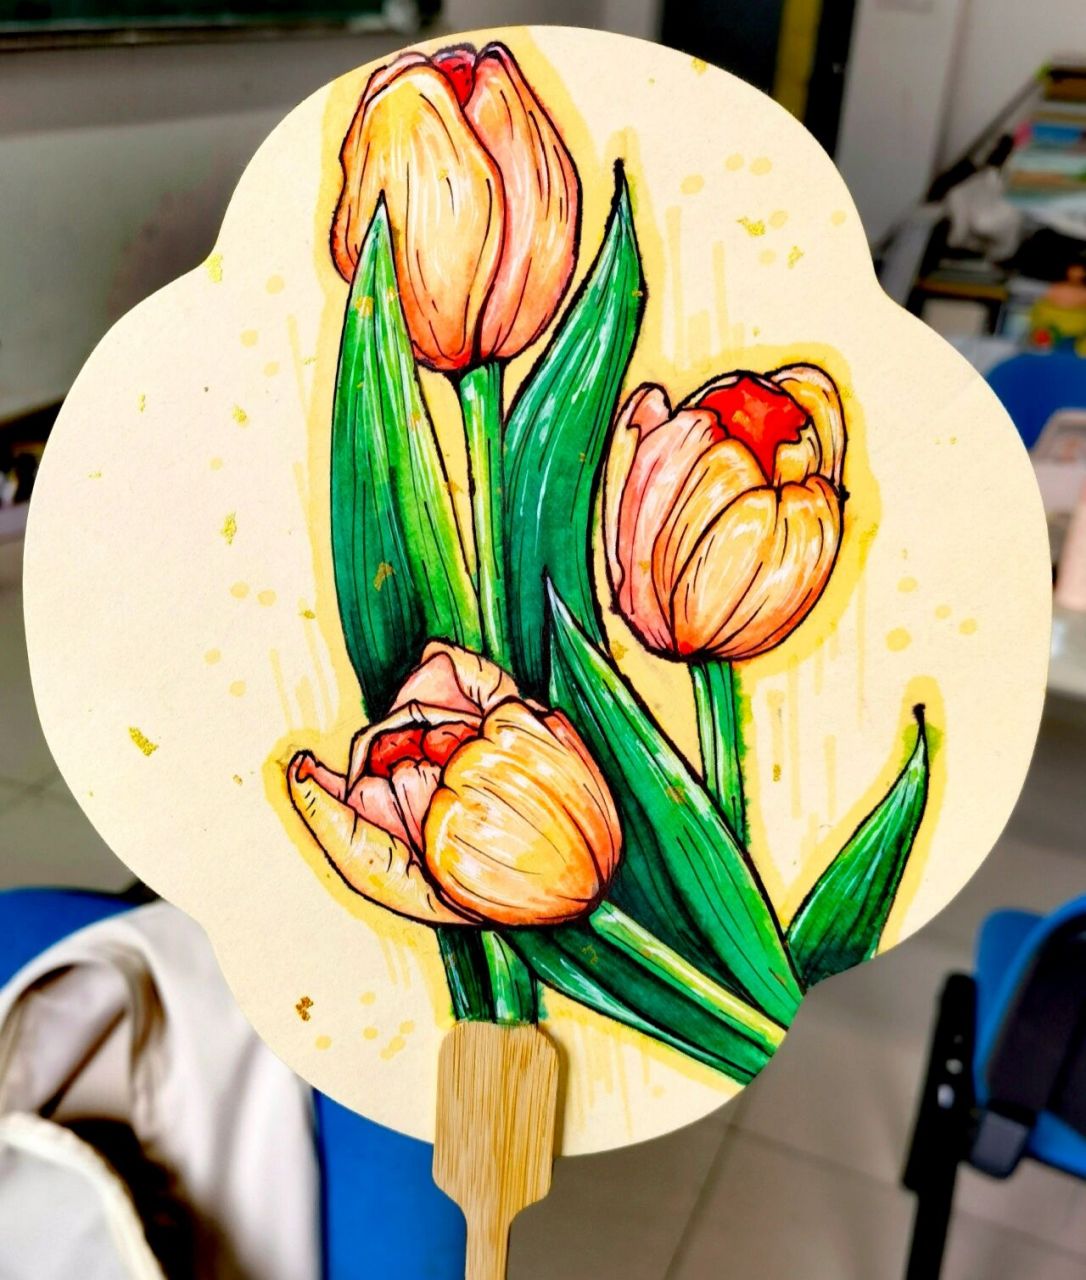 马克笔花卉团扇～ 第一次尝试用马克笔画团扇～画的不好,多多包涵